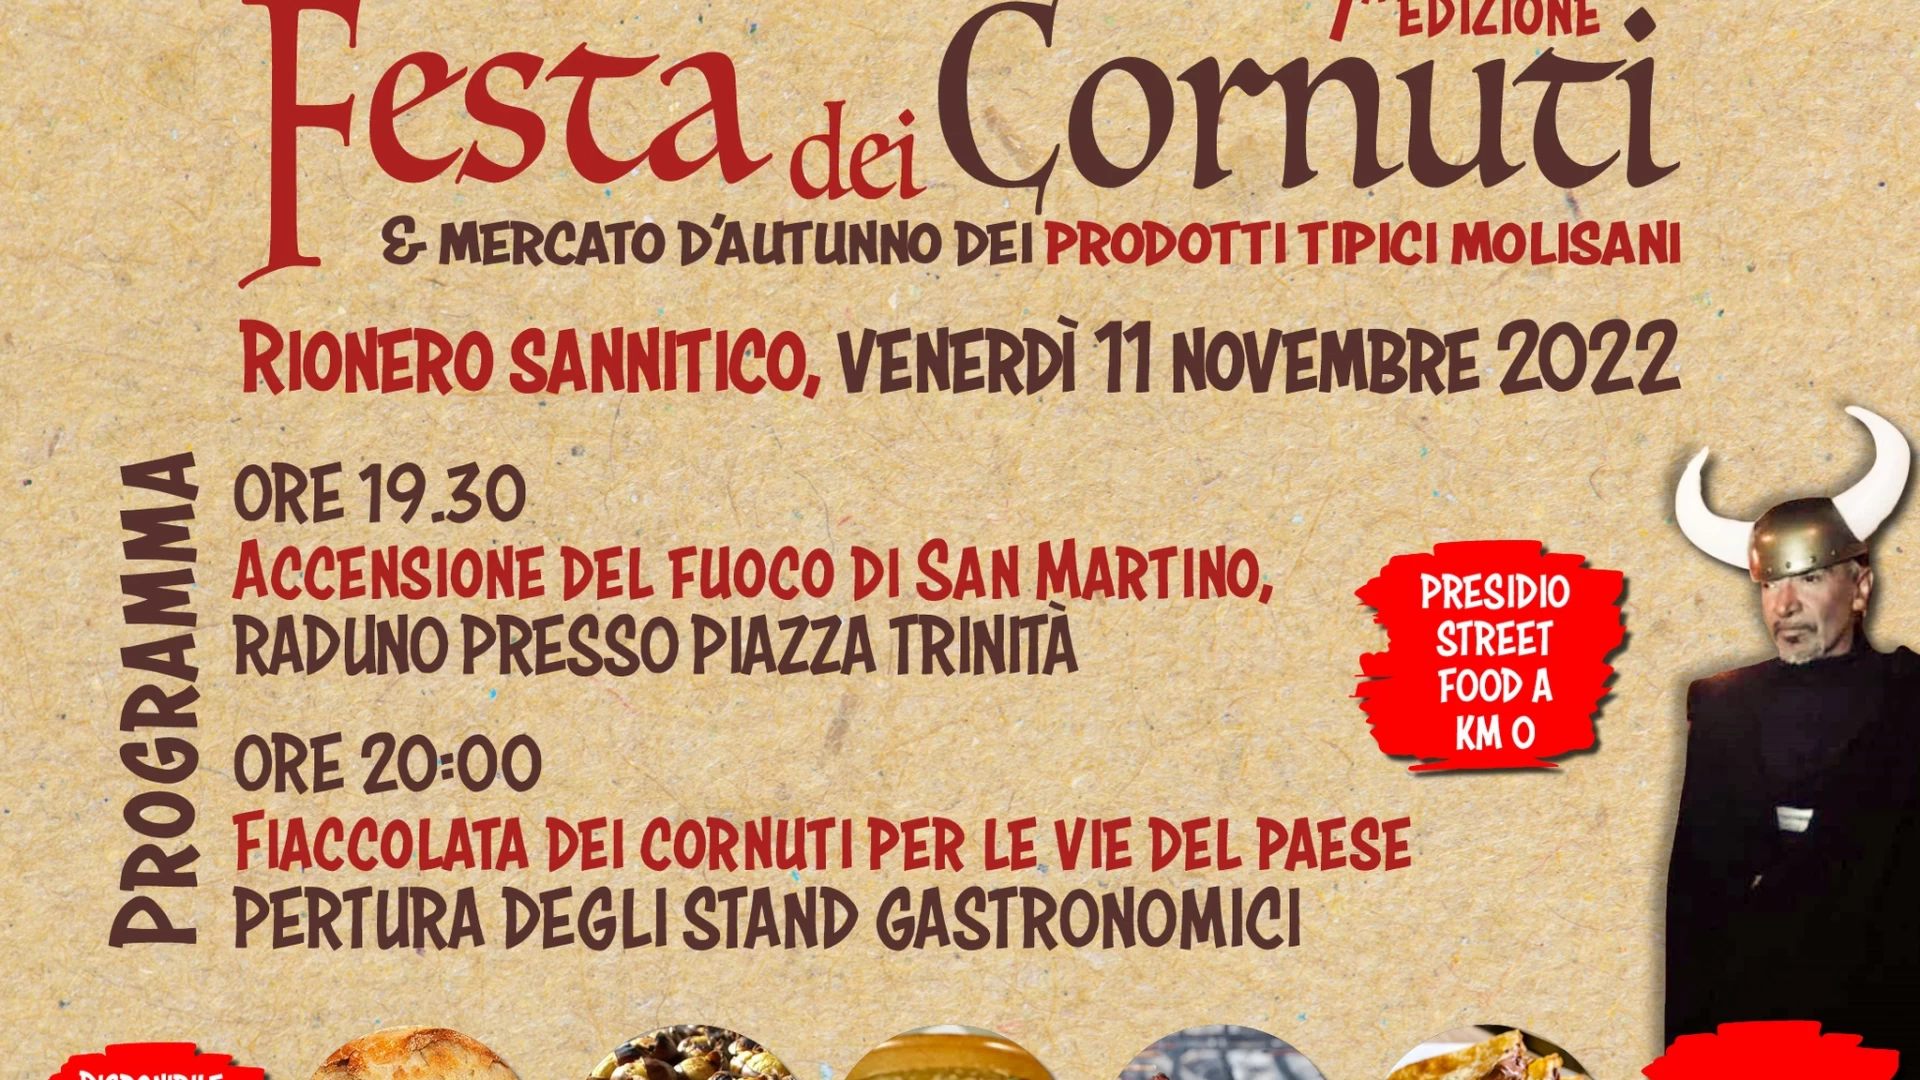 Rionero Sannitico: domani sera l'edizione numero 7 della "Festa dei Cornuti". Scarica la locandina con il programma